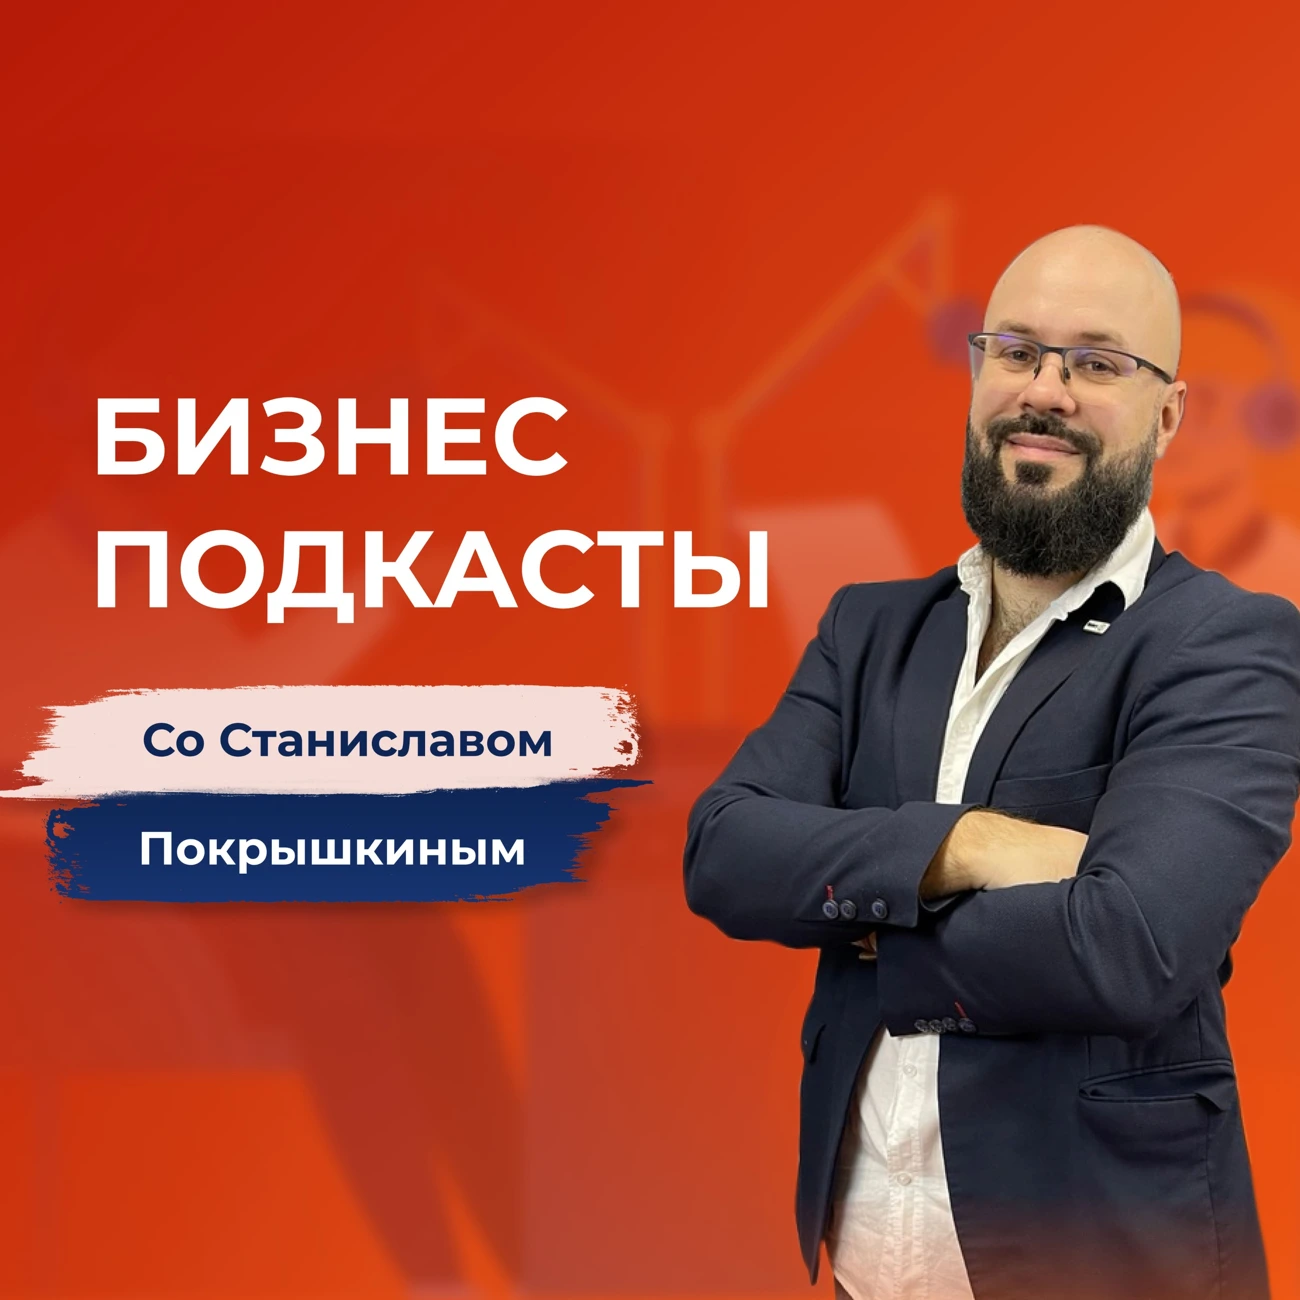 Бизнес-подкасты со Станиславом Покрышкиным